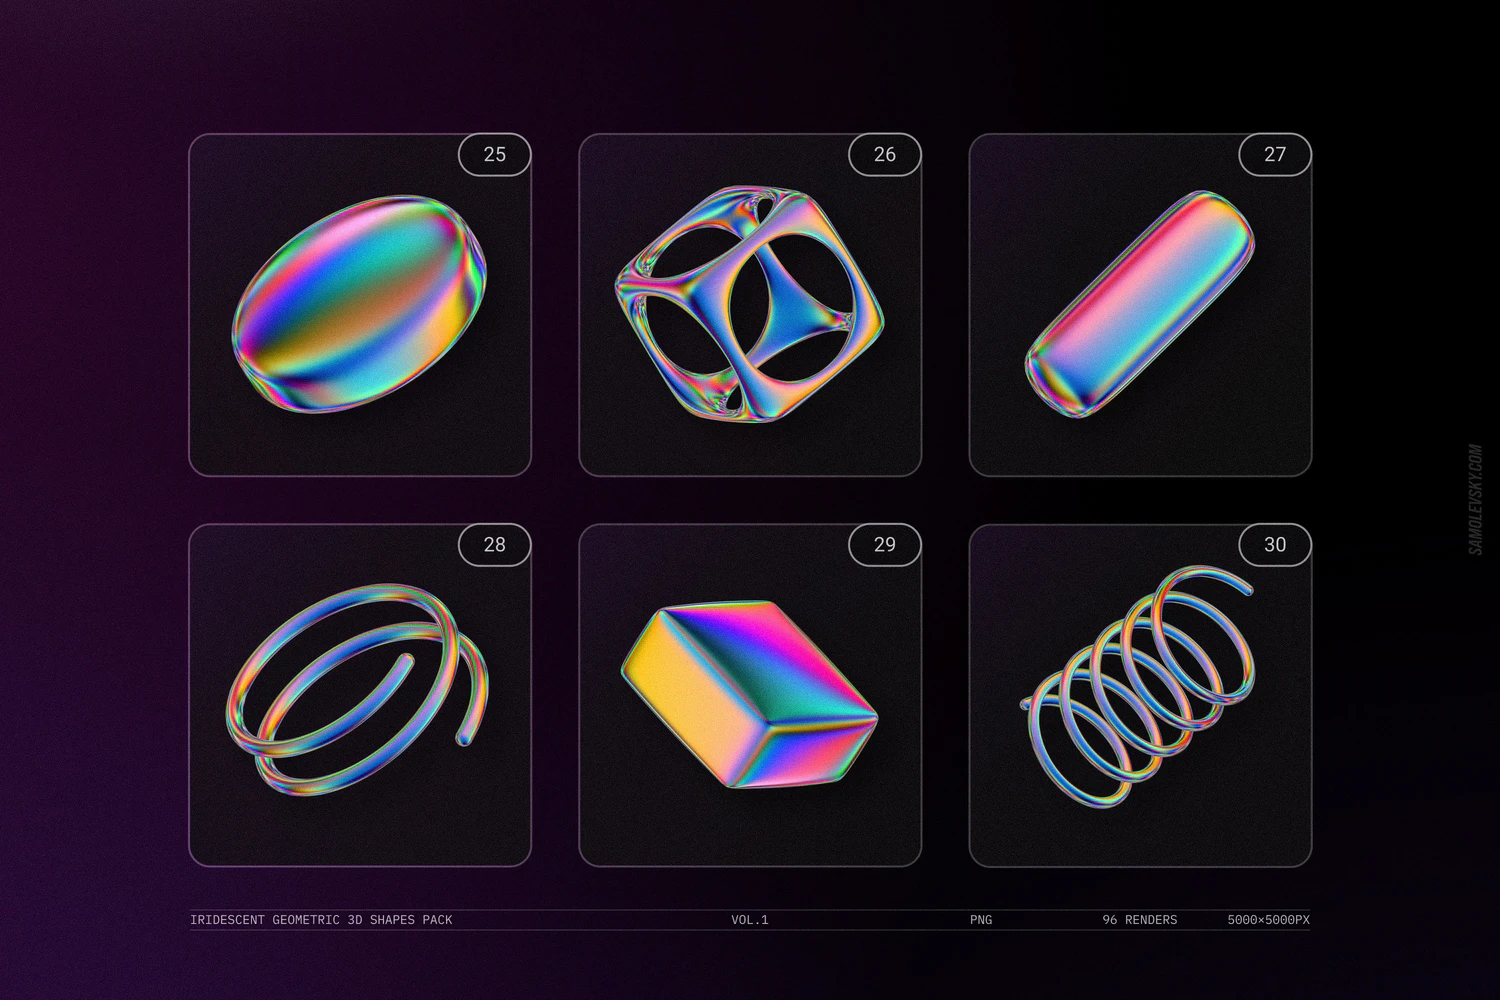 3066 未来科幻机能全息镭射彩虹3D立体金属几何png免抠图片素材 Iridescent geometric 3D shapes VOL